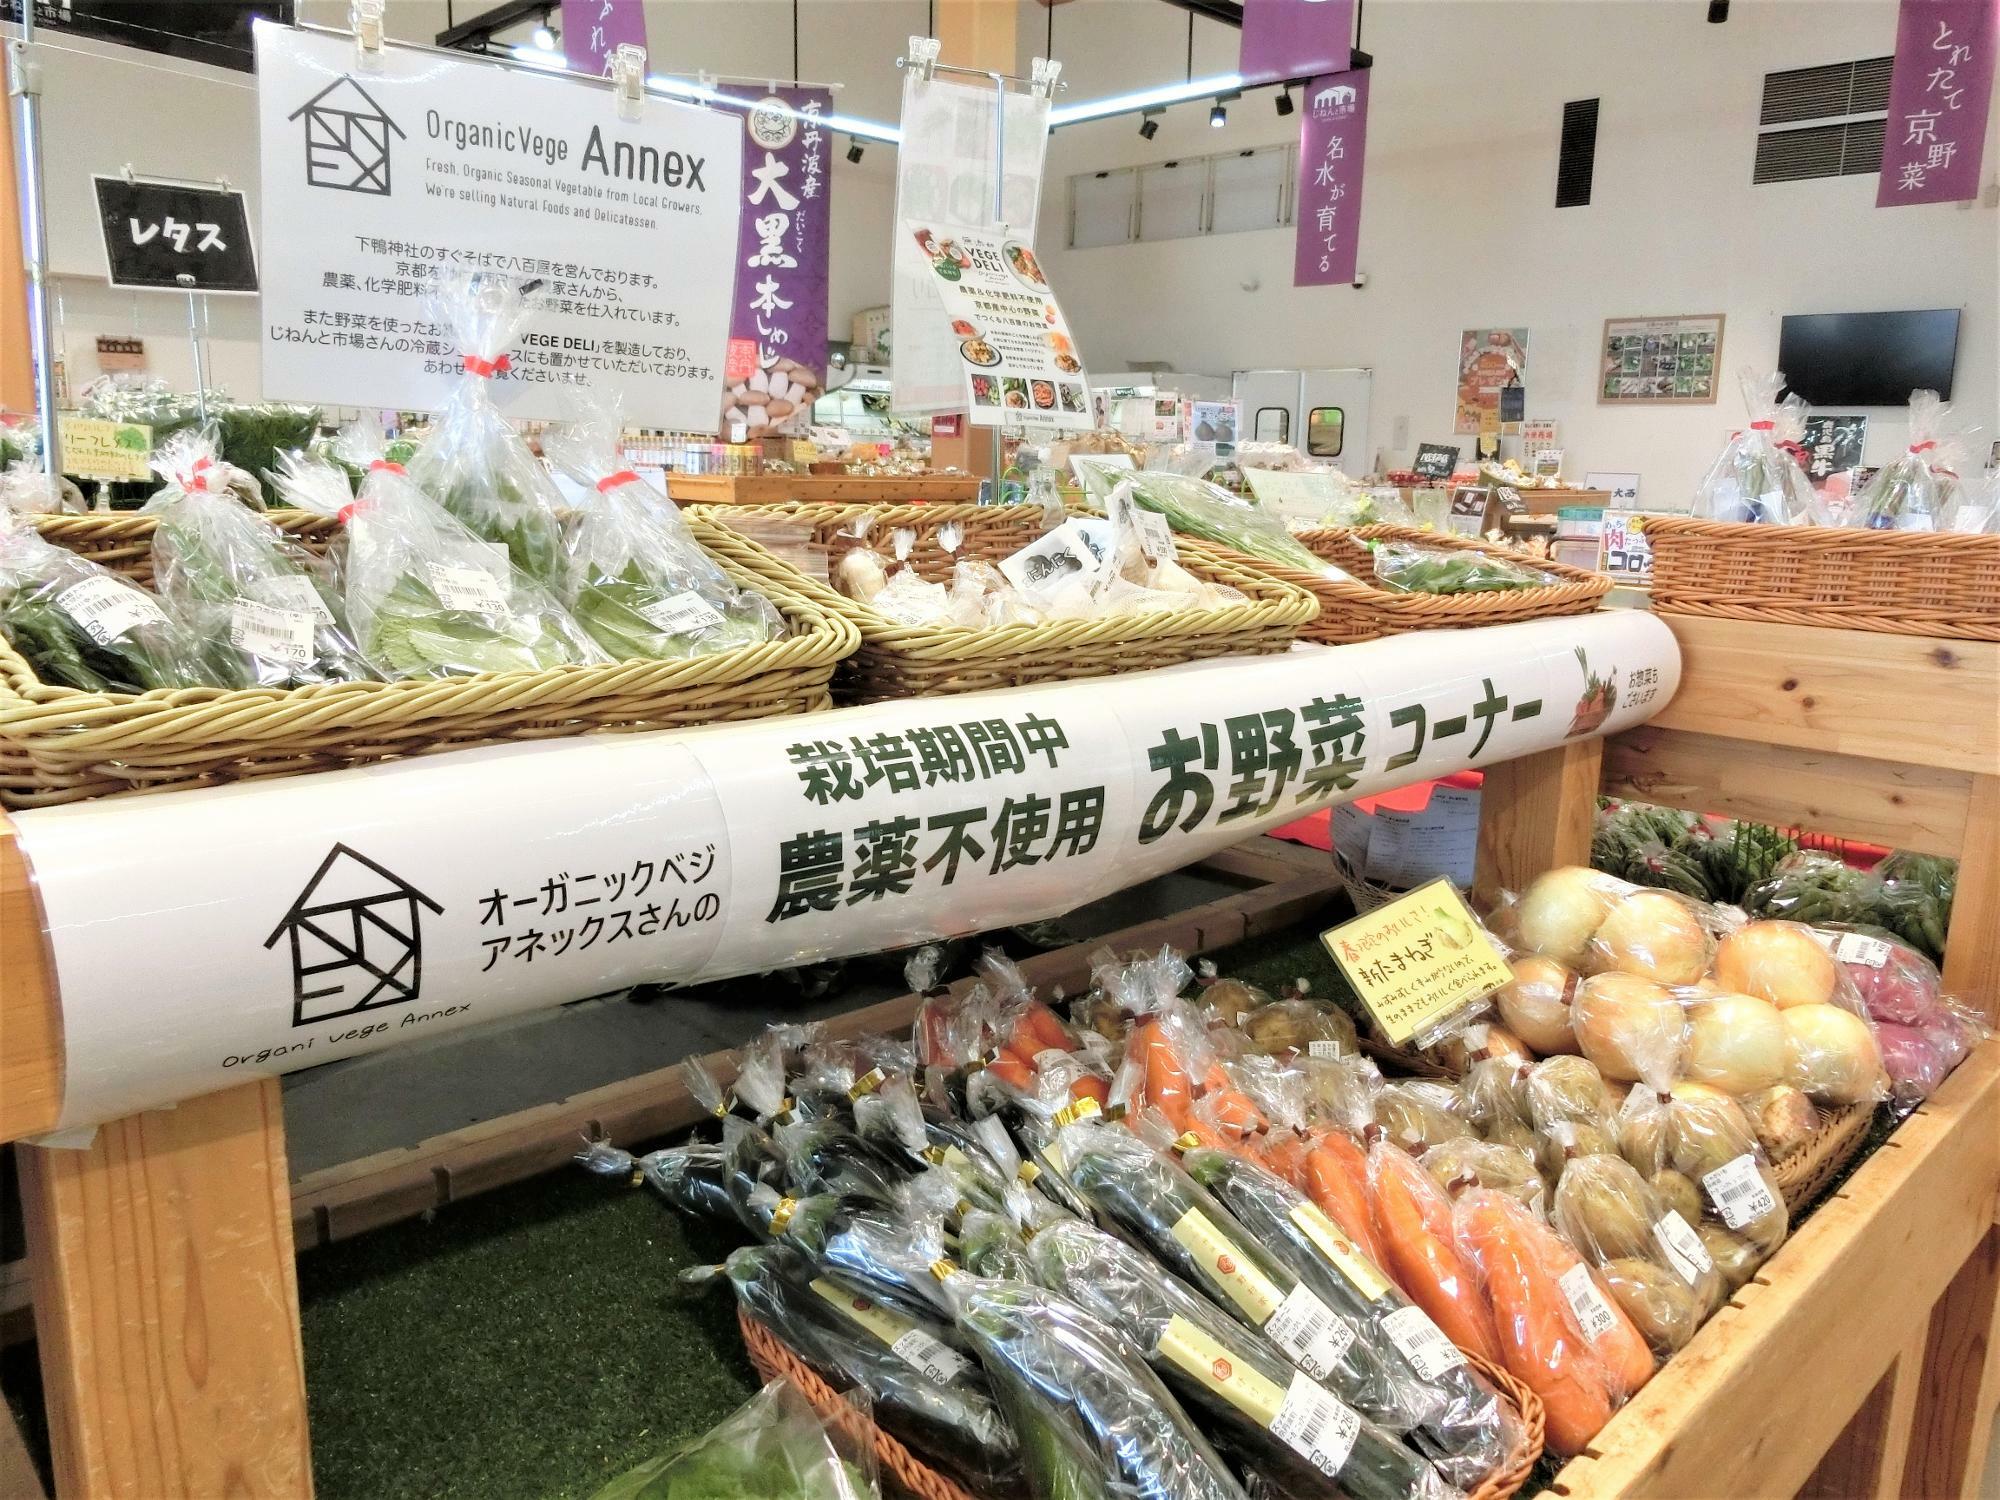 こちらの写真は「じねんと市場」のお野菜販売コーナー